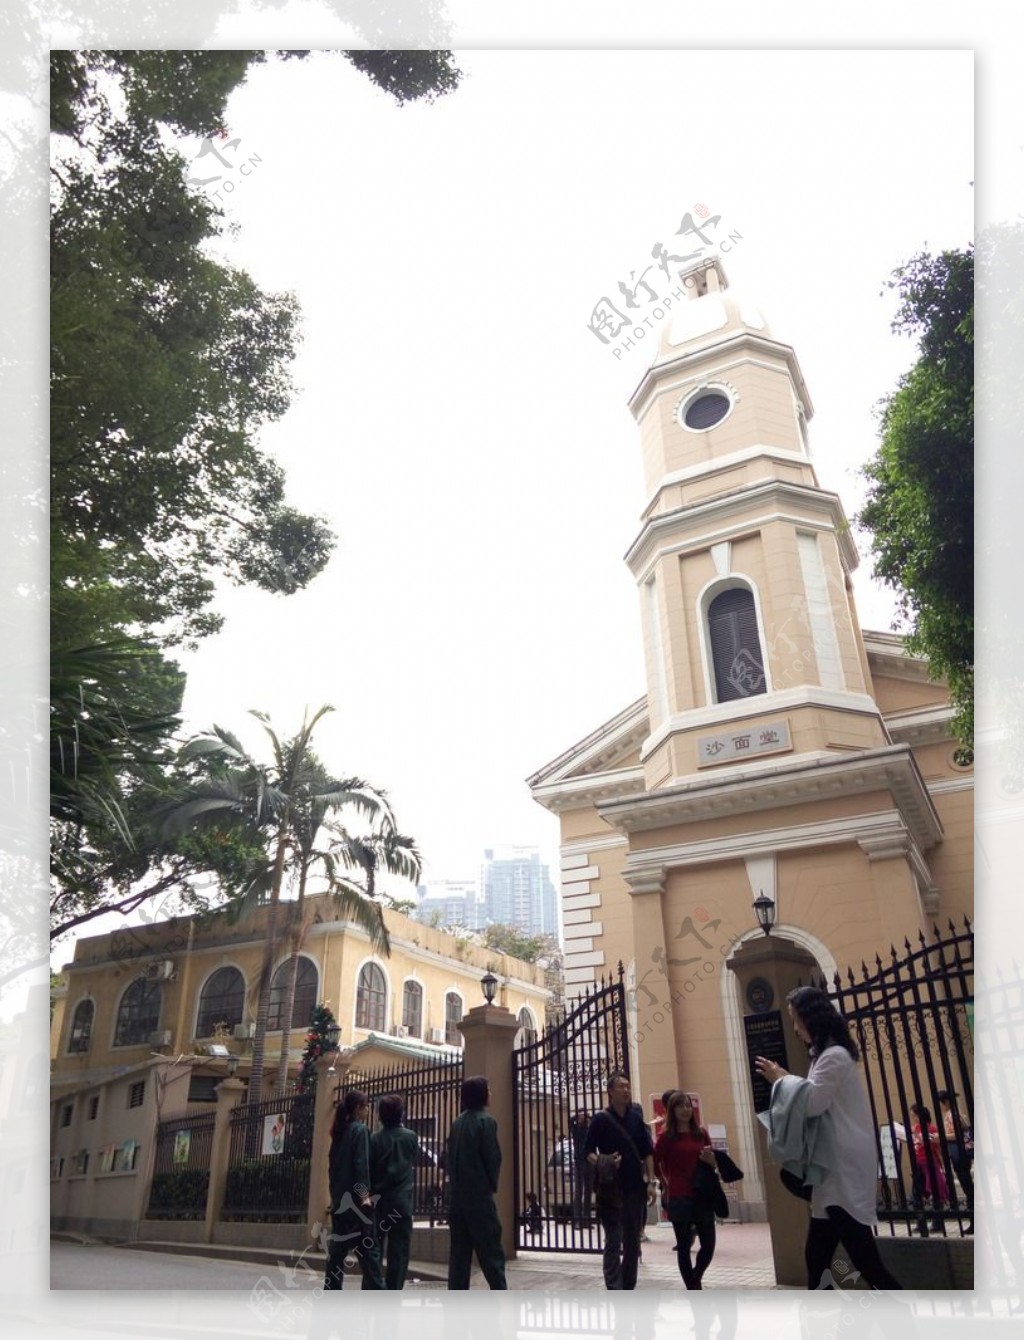 广州沙面教堂图片